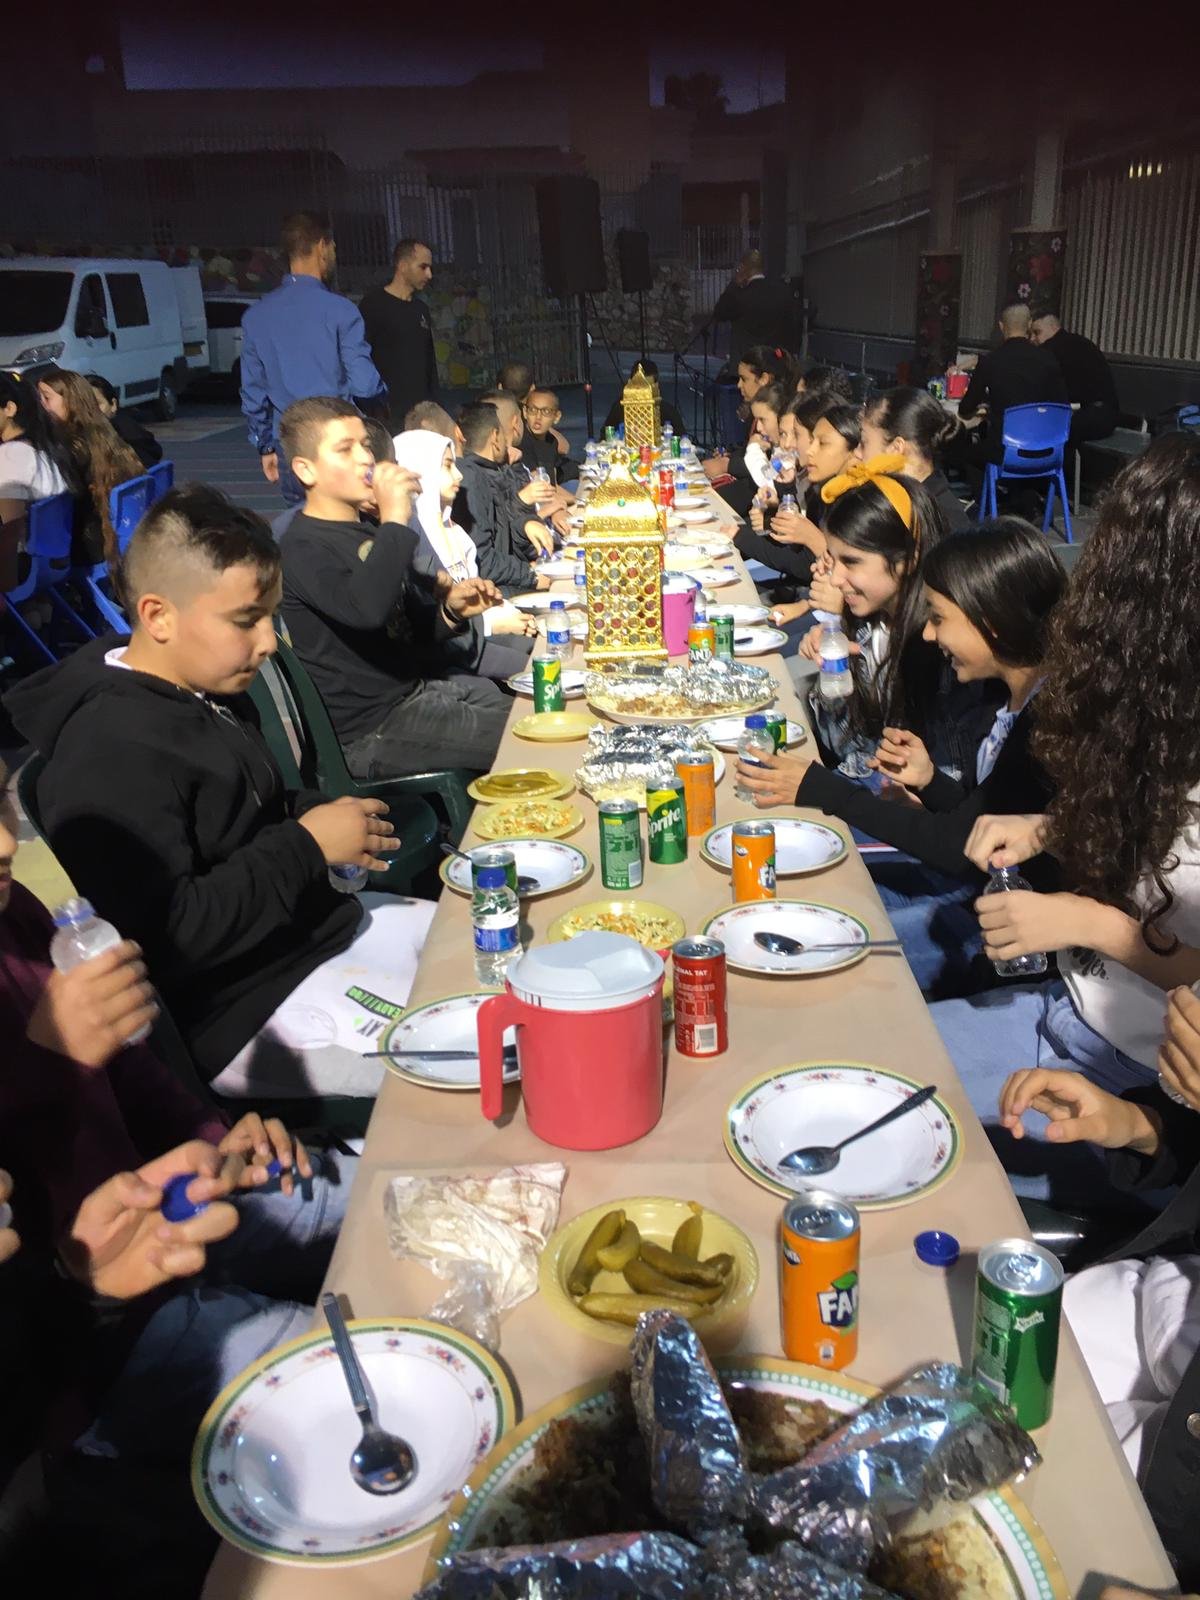 أمسية رمضانية تُعيد النكهة لطقوس وروحانيات الشهر الفضيل في المدرسة الجماهيريّة بئر الأمير-الناصرة-20